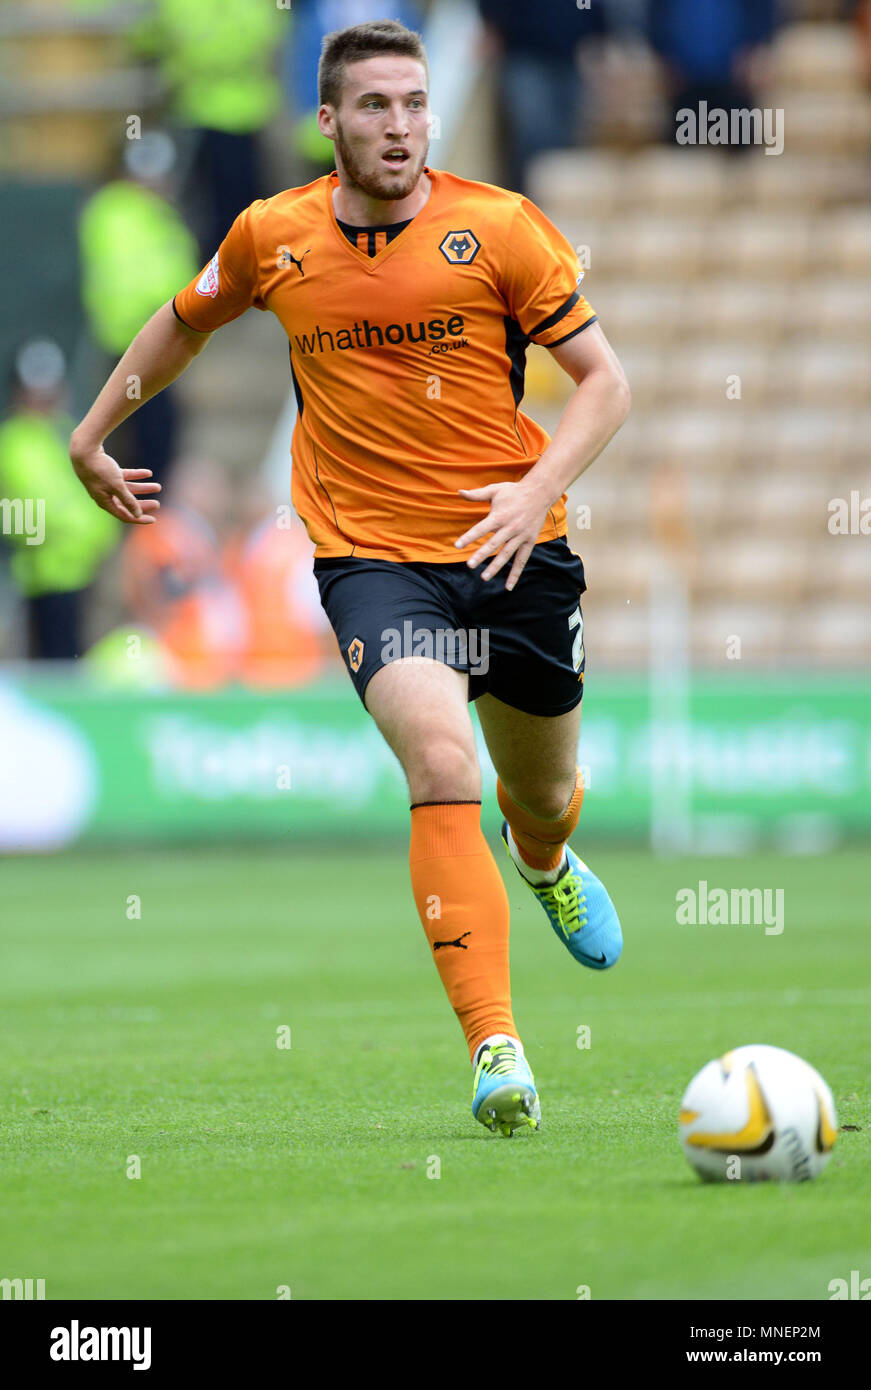 Wolverhampton Wanderers footballer Matt Doherty in action 2013 Stock Photo